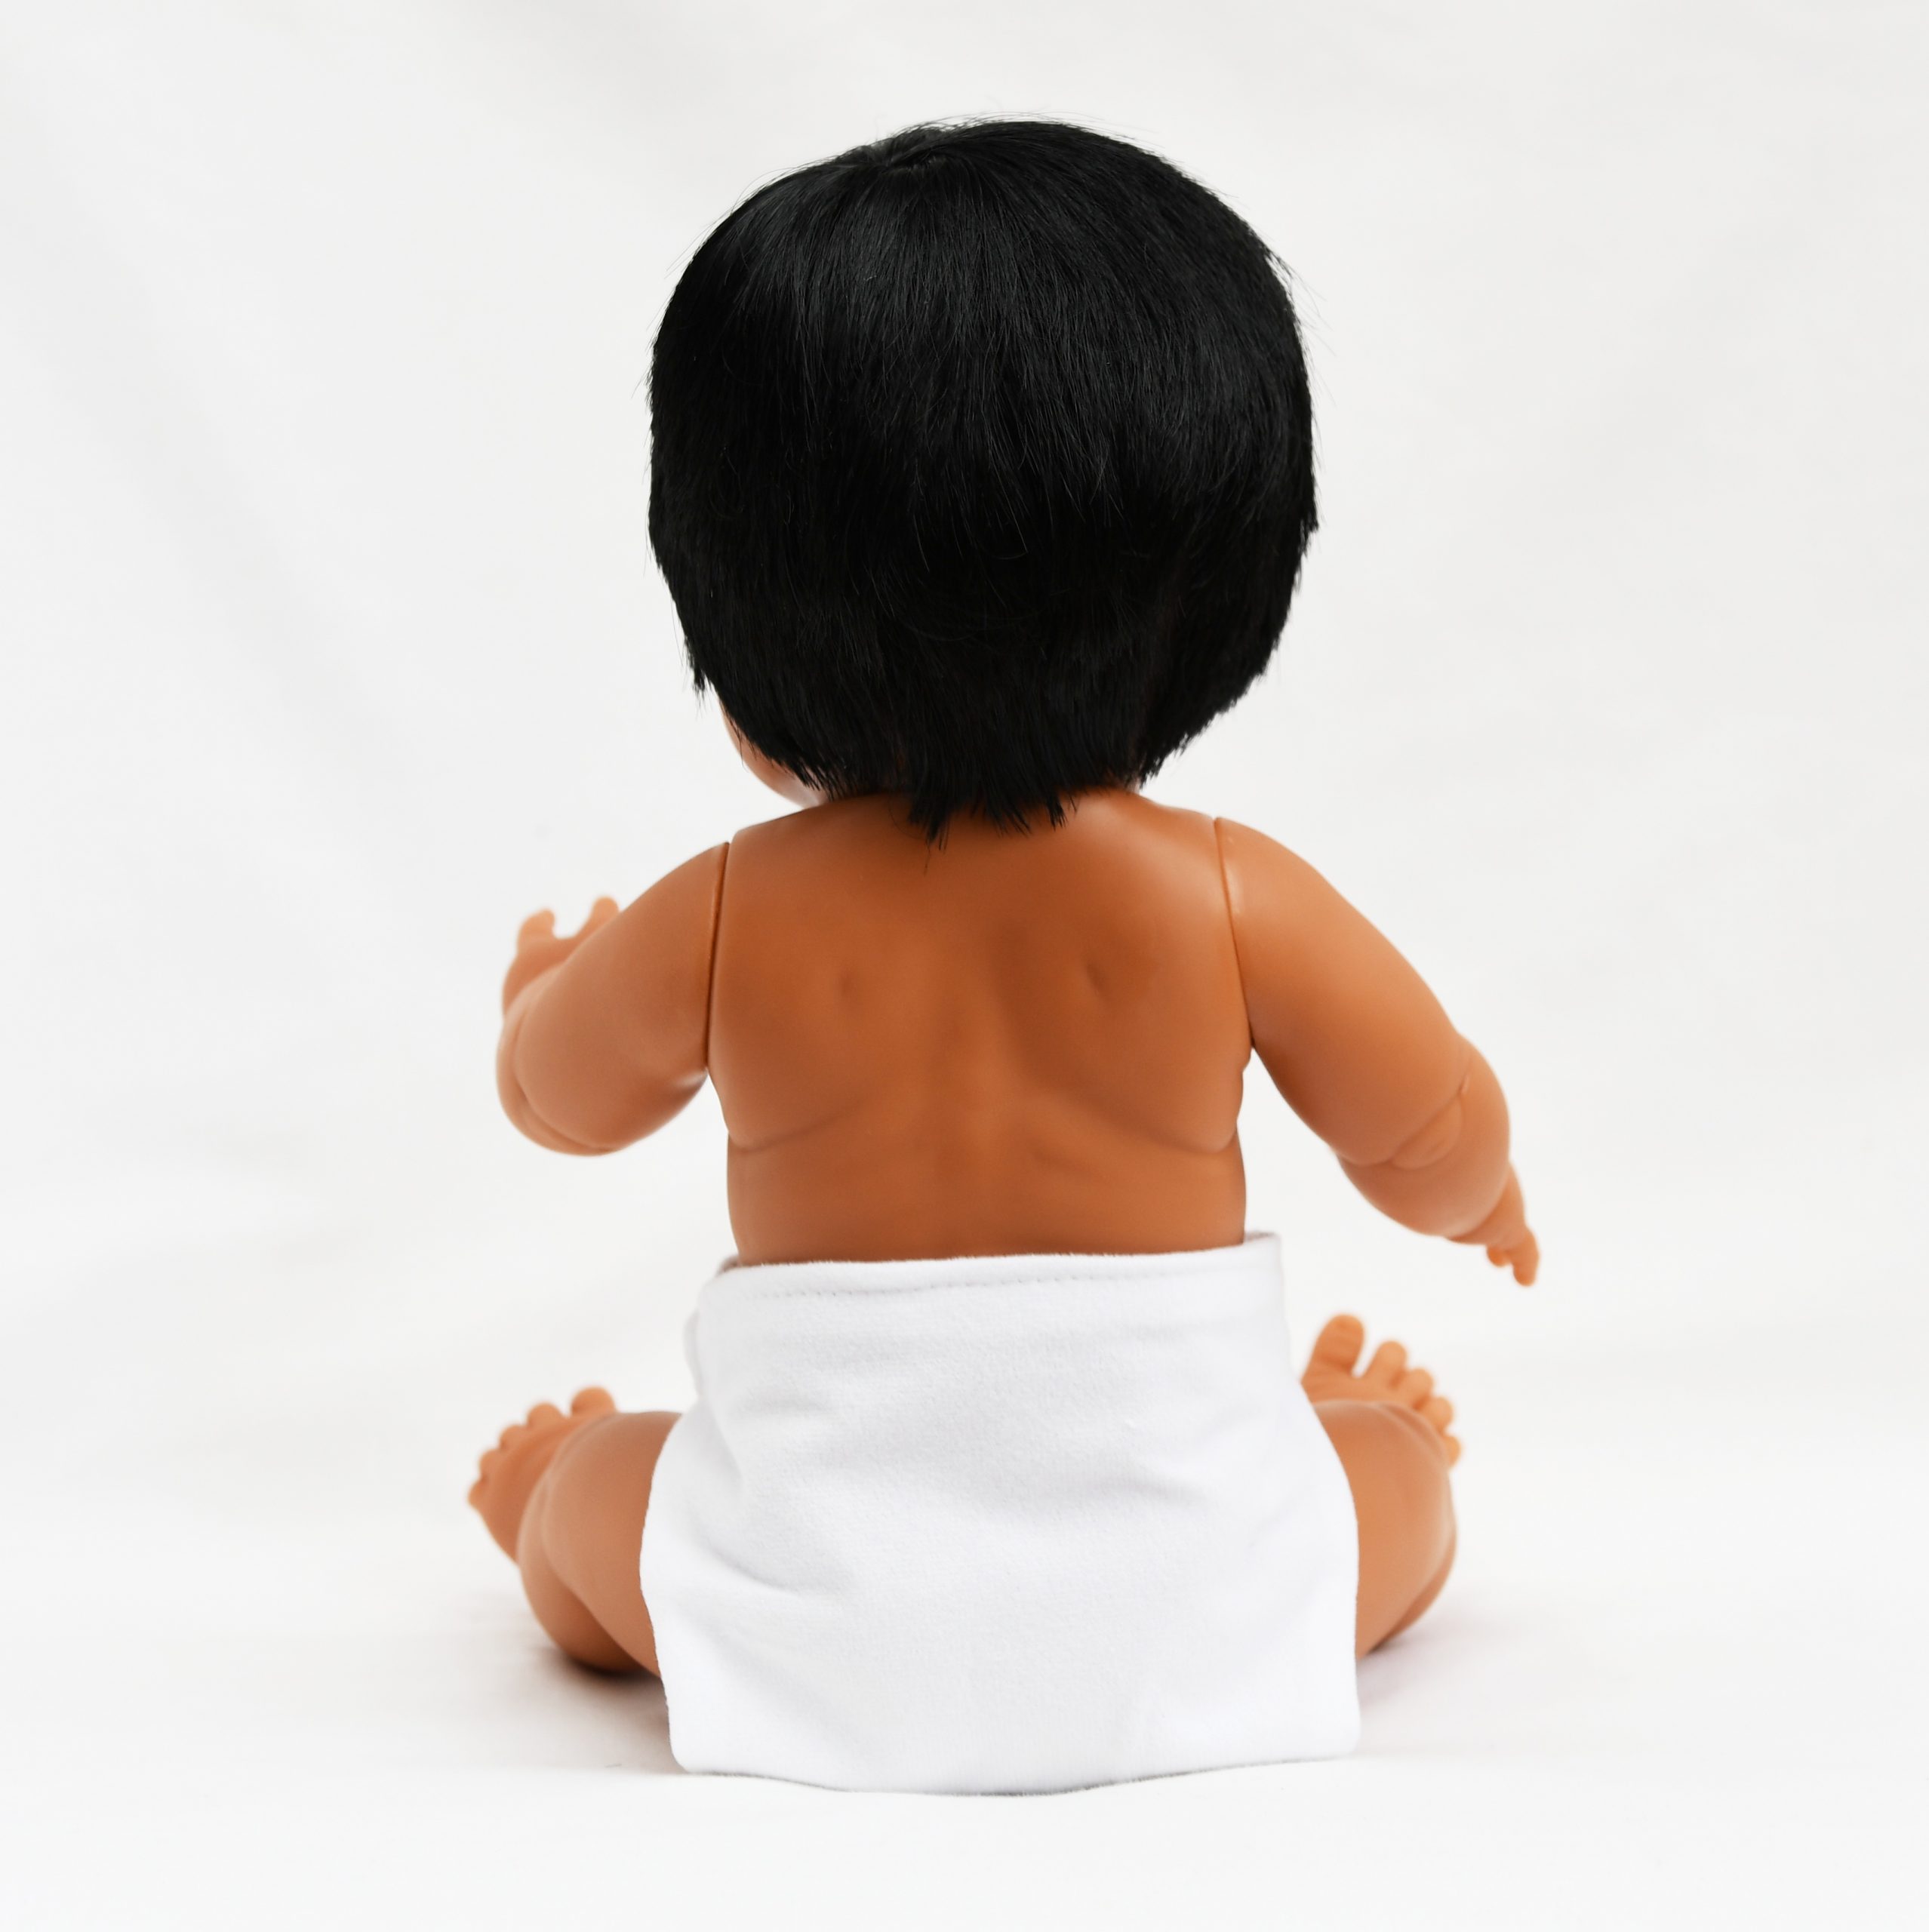 Poupée garçon syndrome de Down-noir : 38 cm - Tangram Montessori